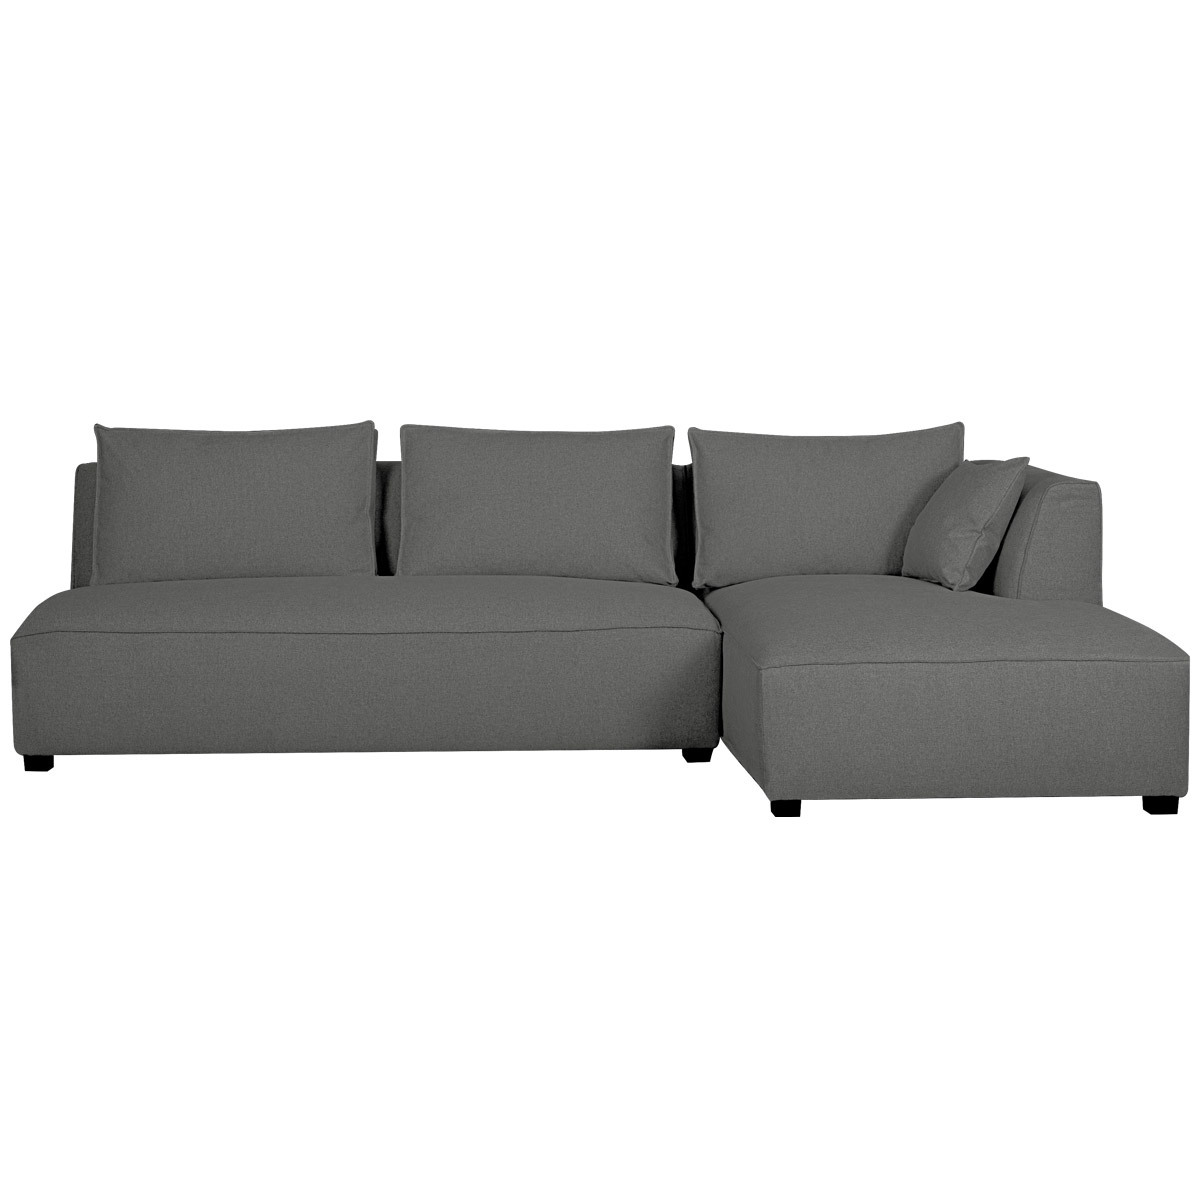 Canapé d'angle droit moderne modulable avec chauffeuse double gris anthracite PLURIEL vue1